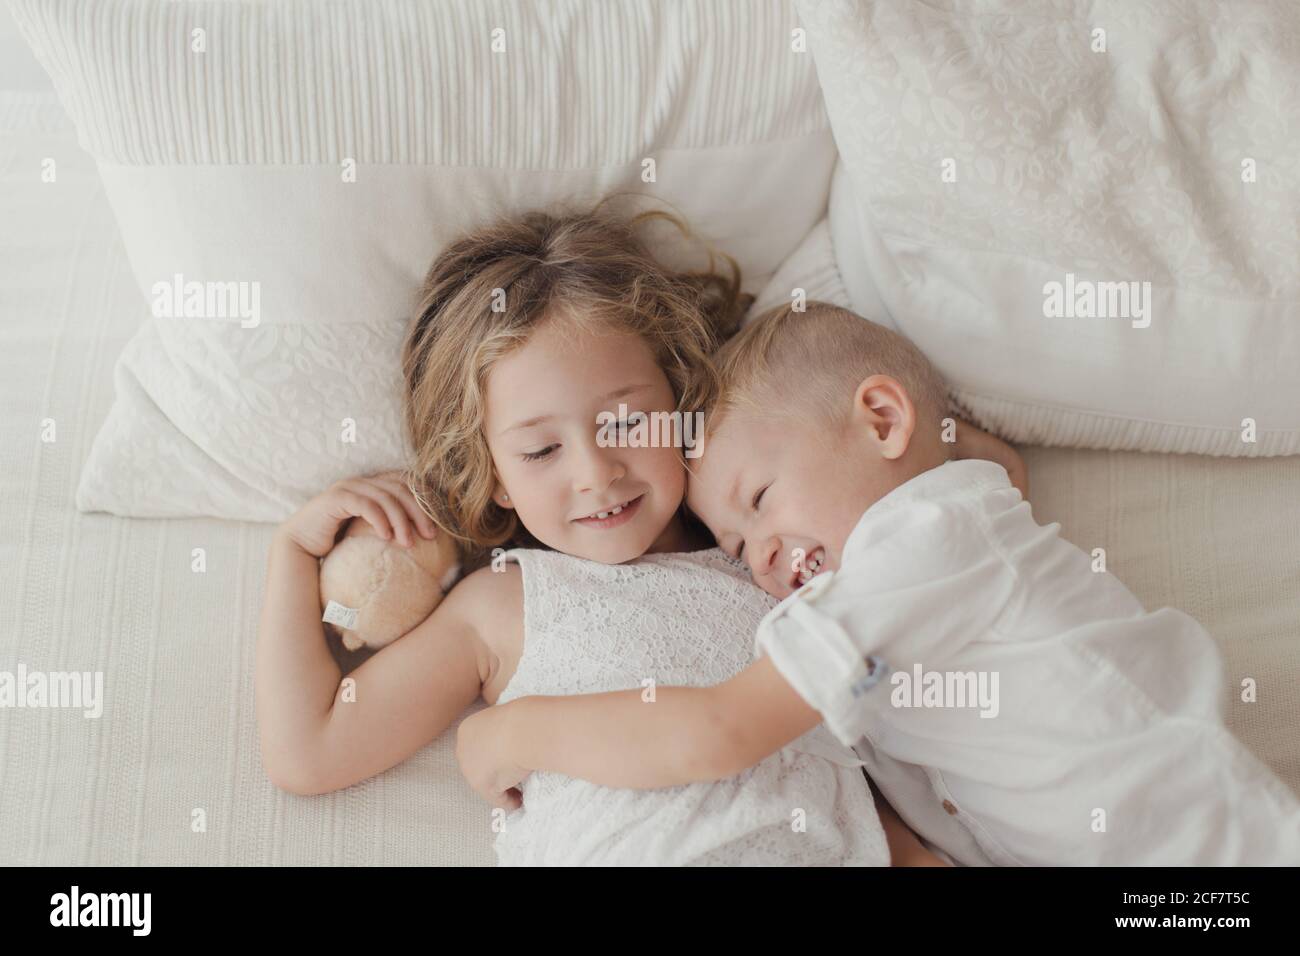 Von oben glückliche männliche und weibliche Kinder in weiß Kleidung liegt auf dem Bett in einer Umarmung und lächelnd Stockfoto